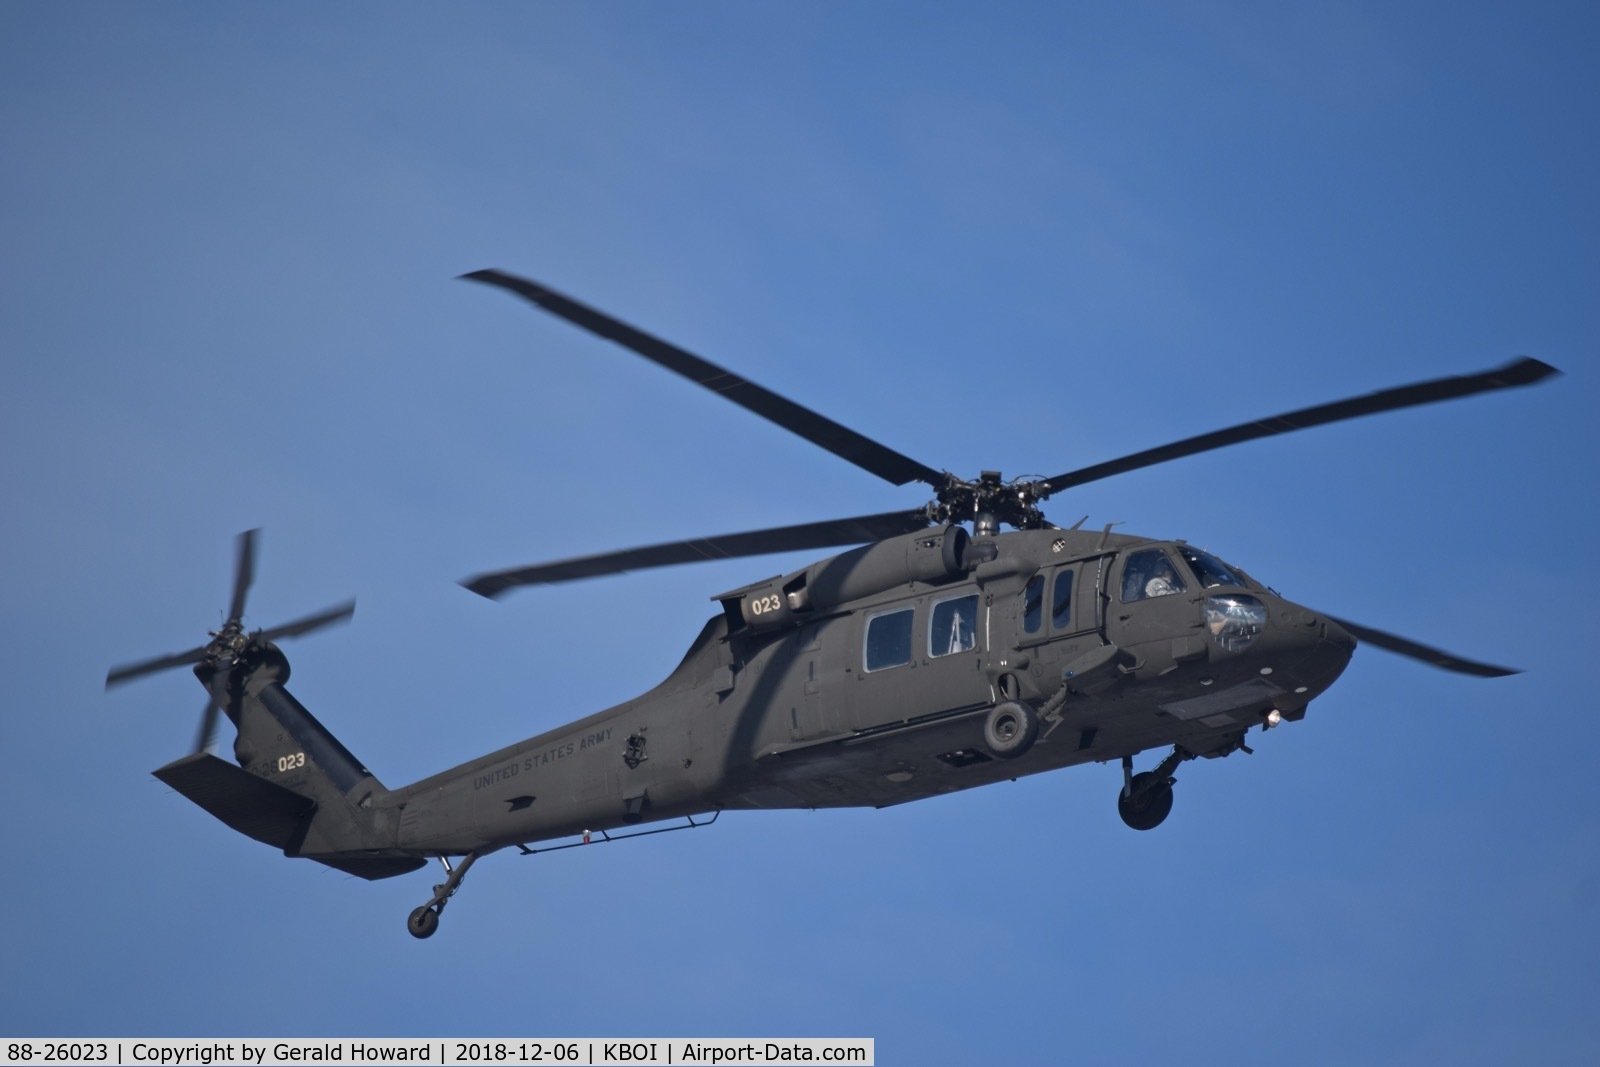 88-26023, 1988 Sikorsky UH-60A Black Hawk C/N 70.1232, landing BOI.